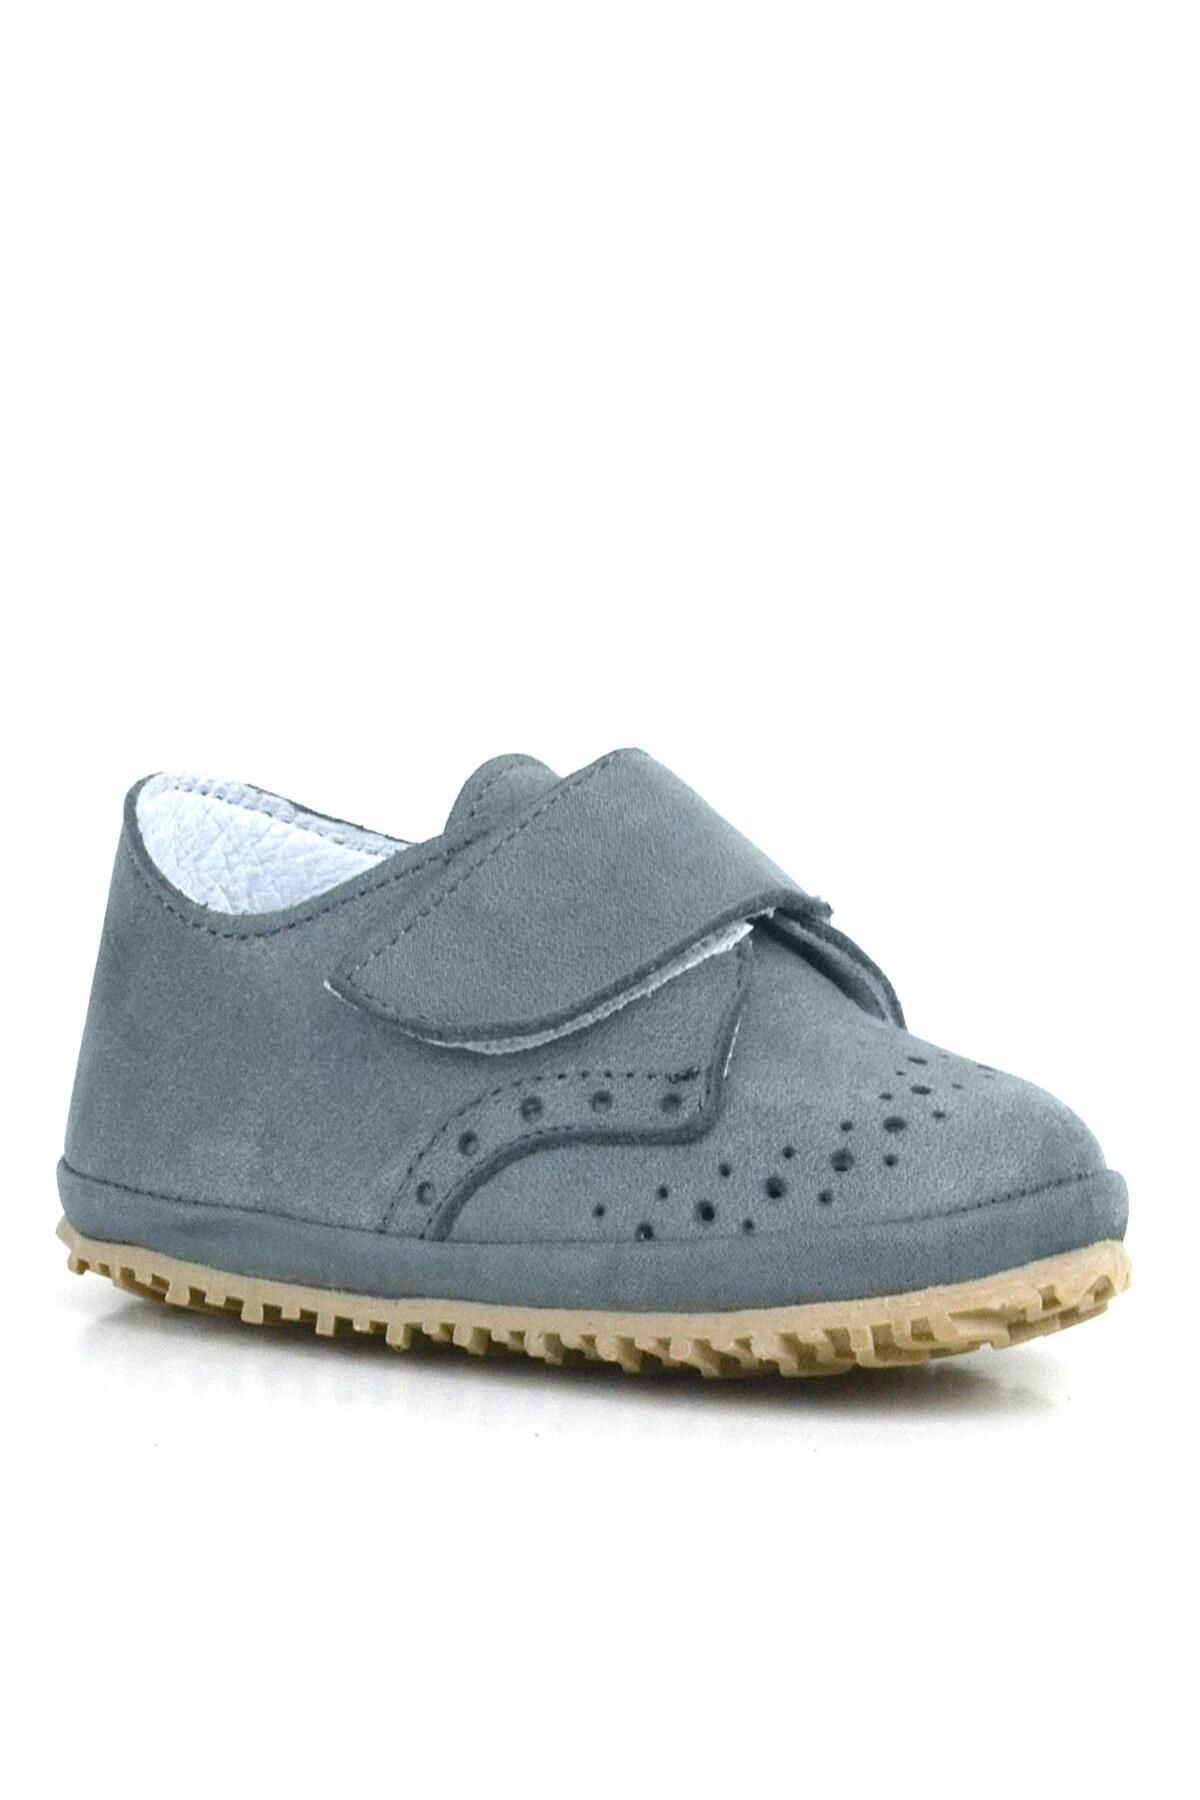 hapshoe Hakiki Deri Gri Cırtlı Bebek Patik Ayakkabı